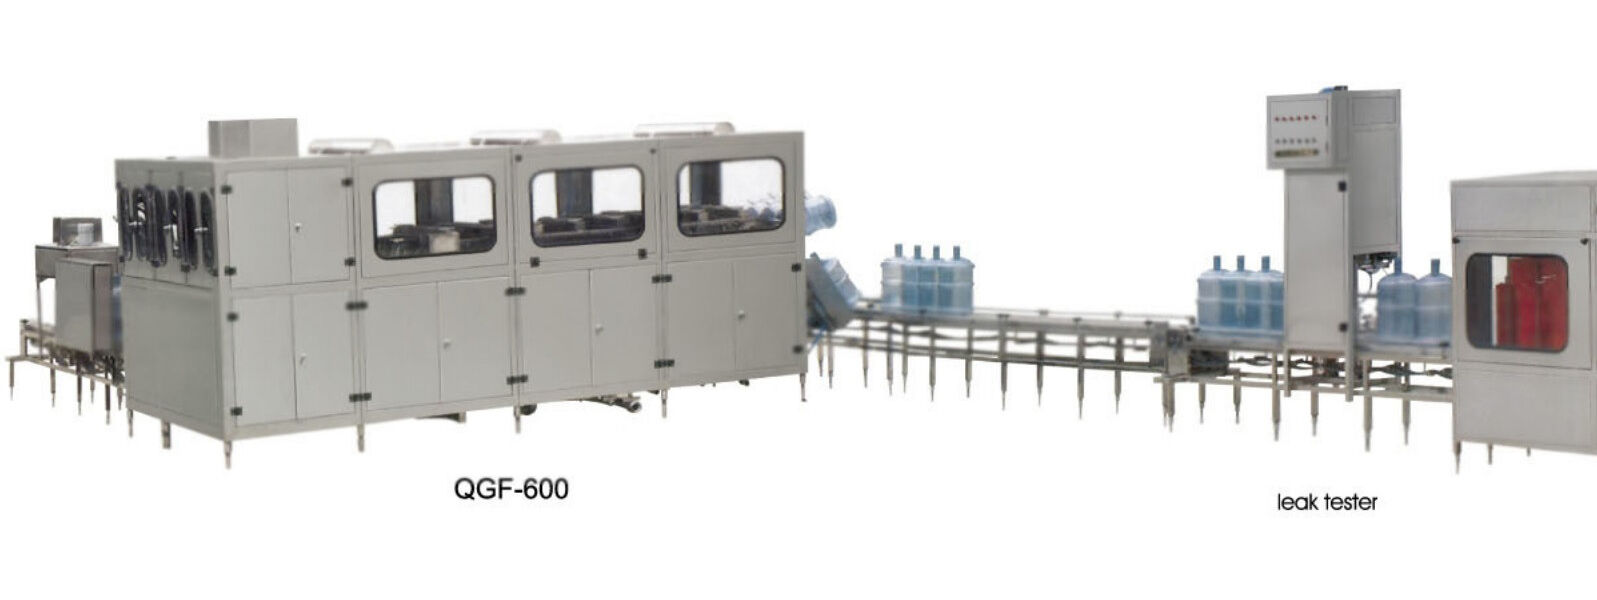 Производственная линия QGF-900 по розливу питьевой воды объемом 5 галлонов